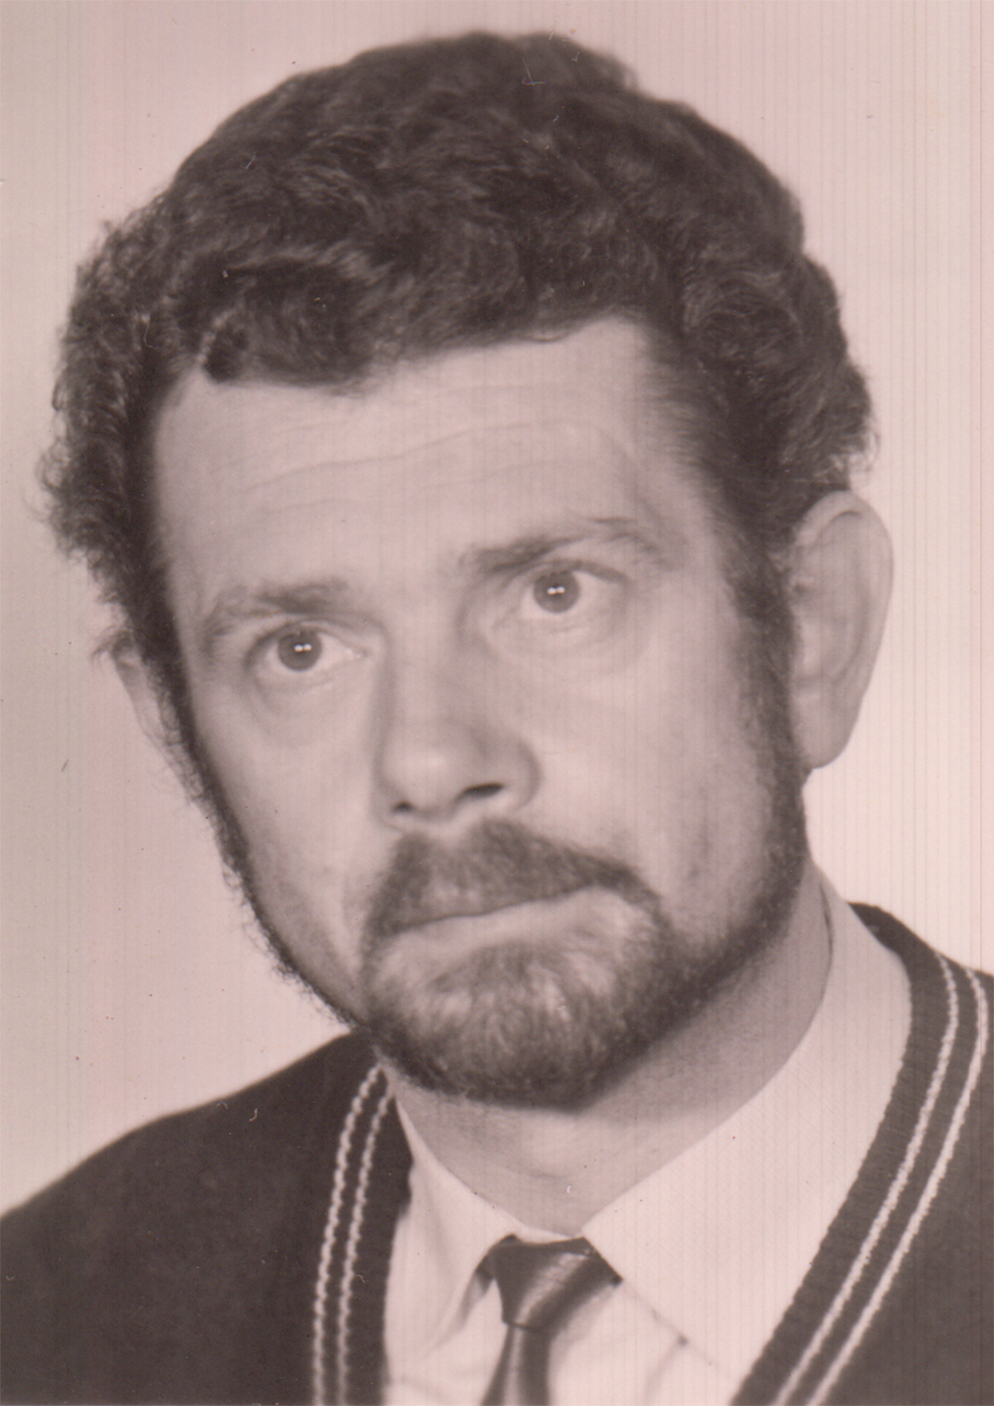 Derek Leszek